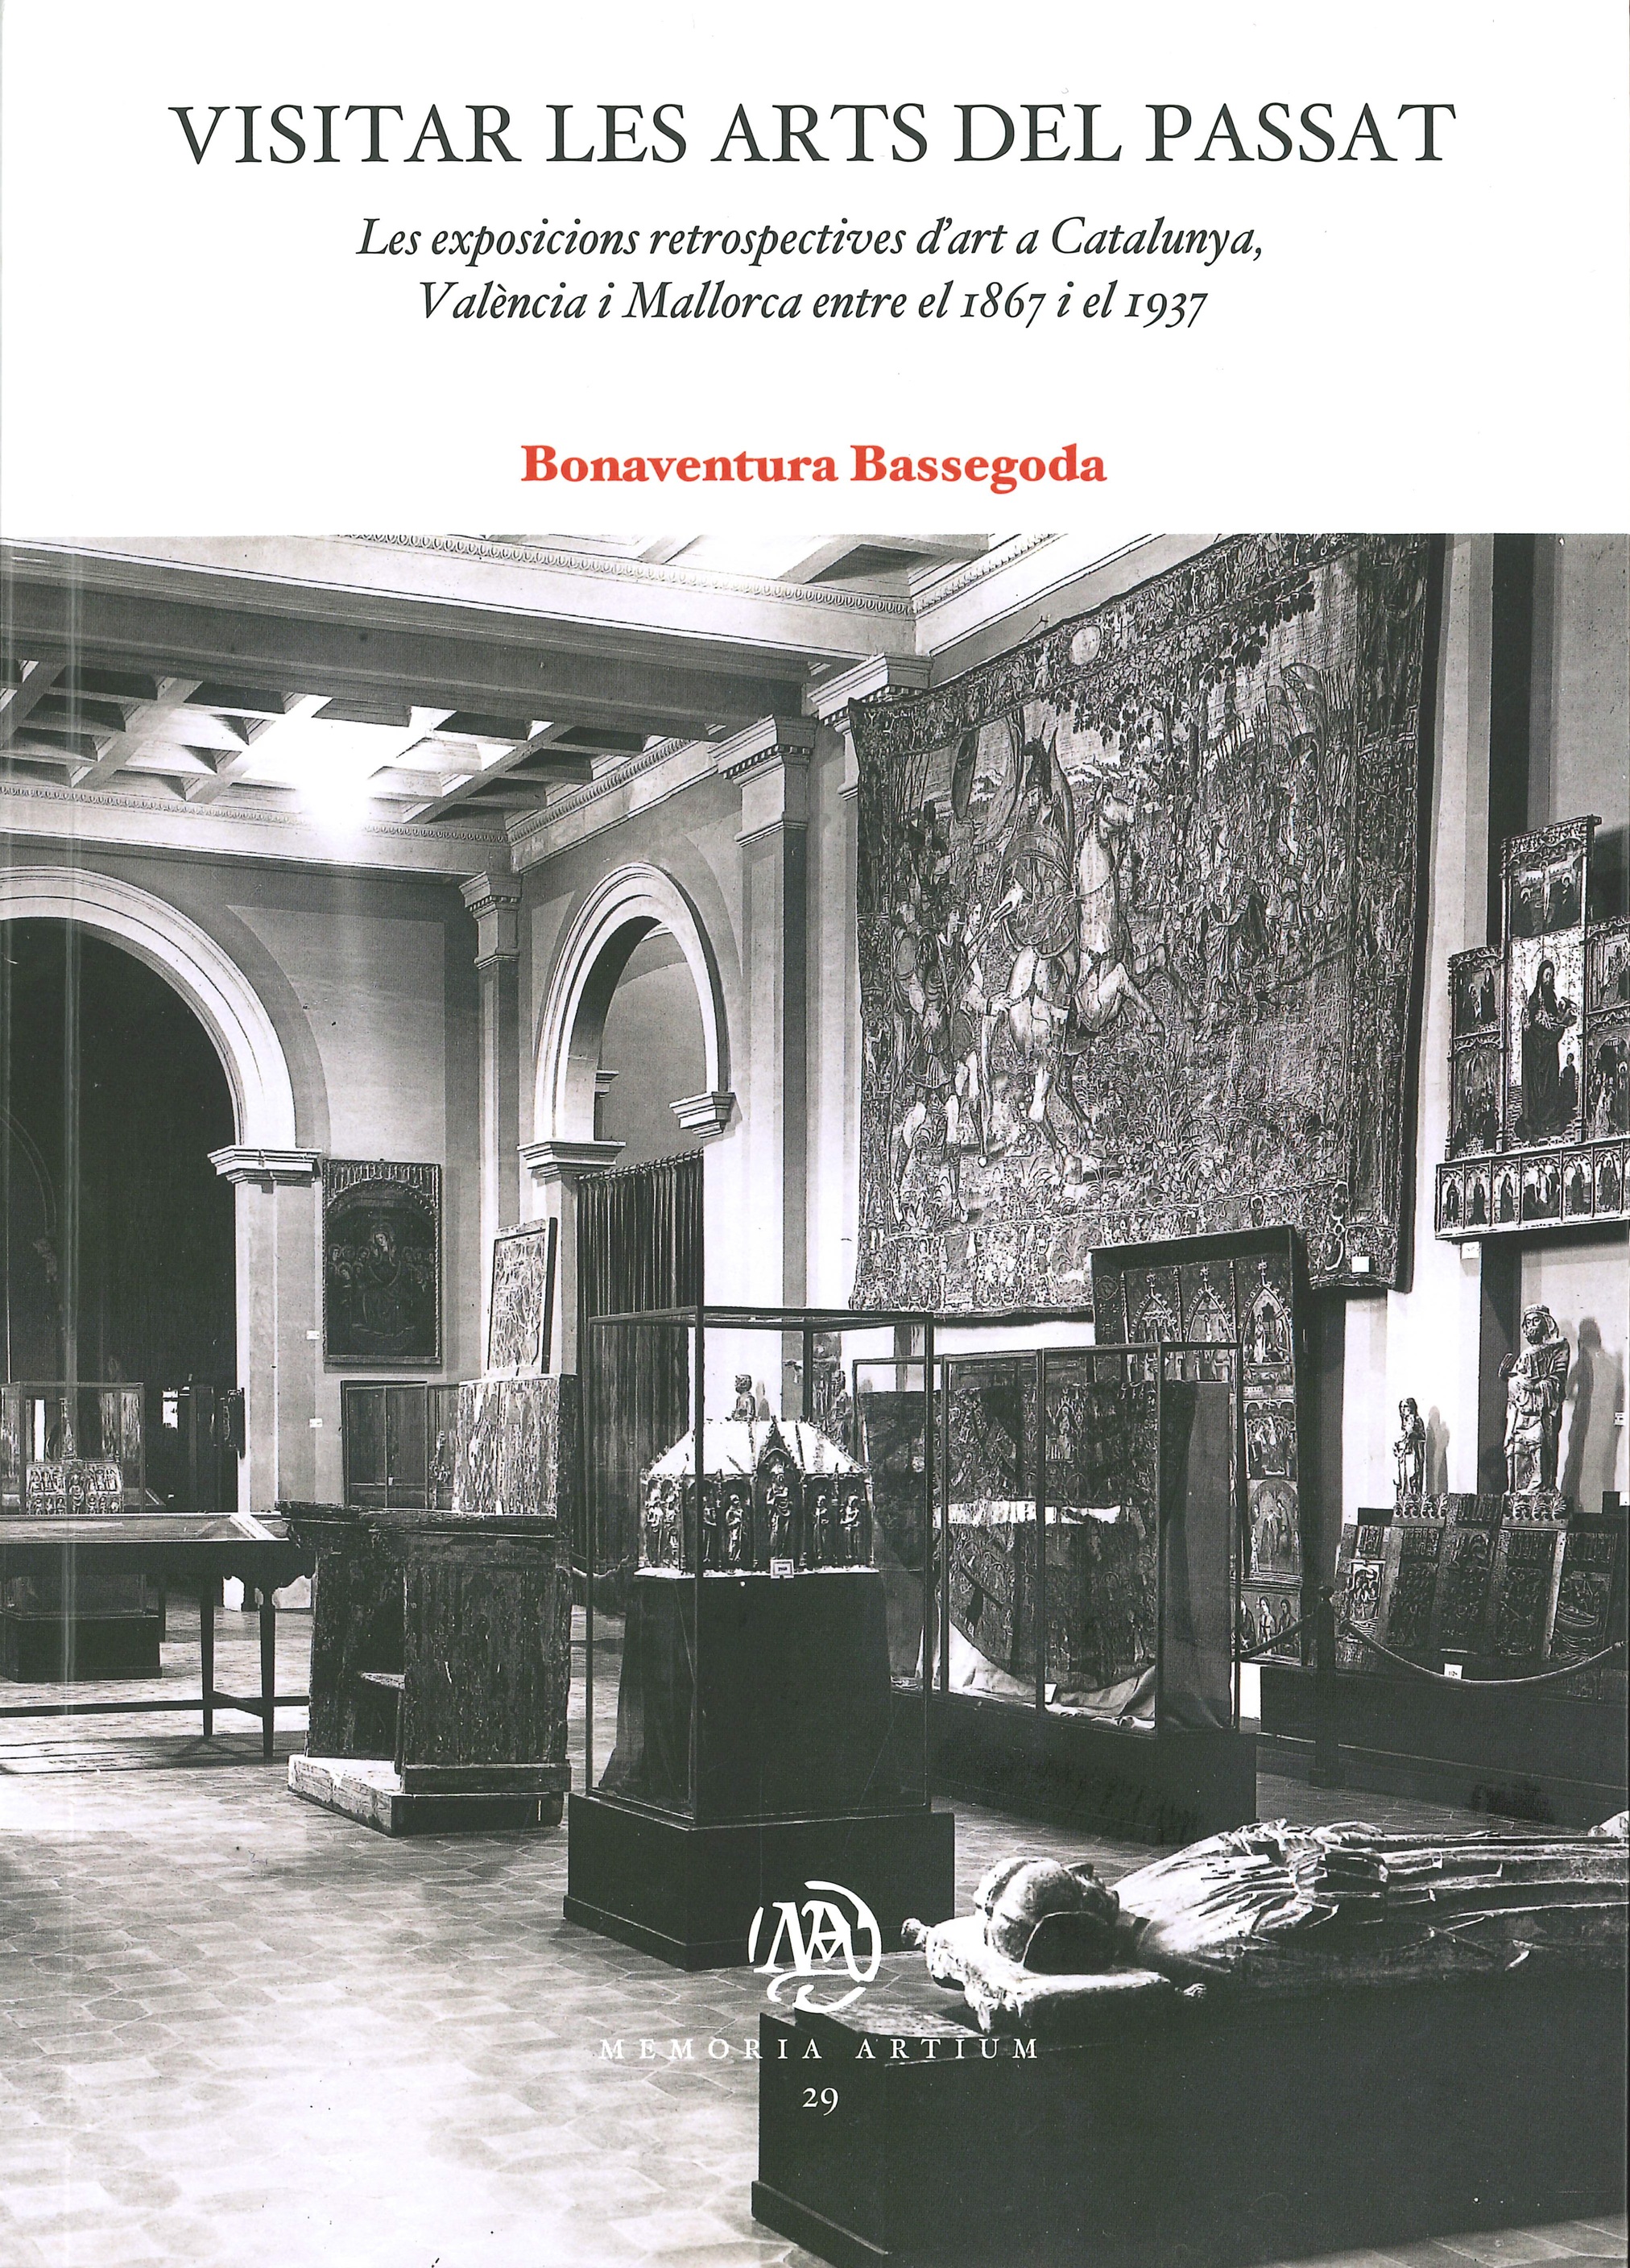 Imagen de portada del libro Visitar les arts del passat